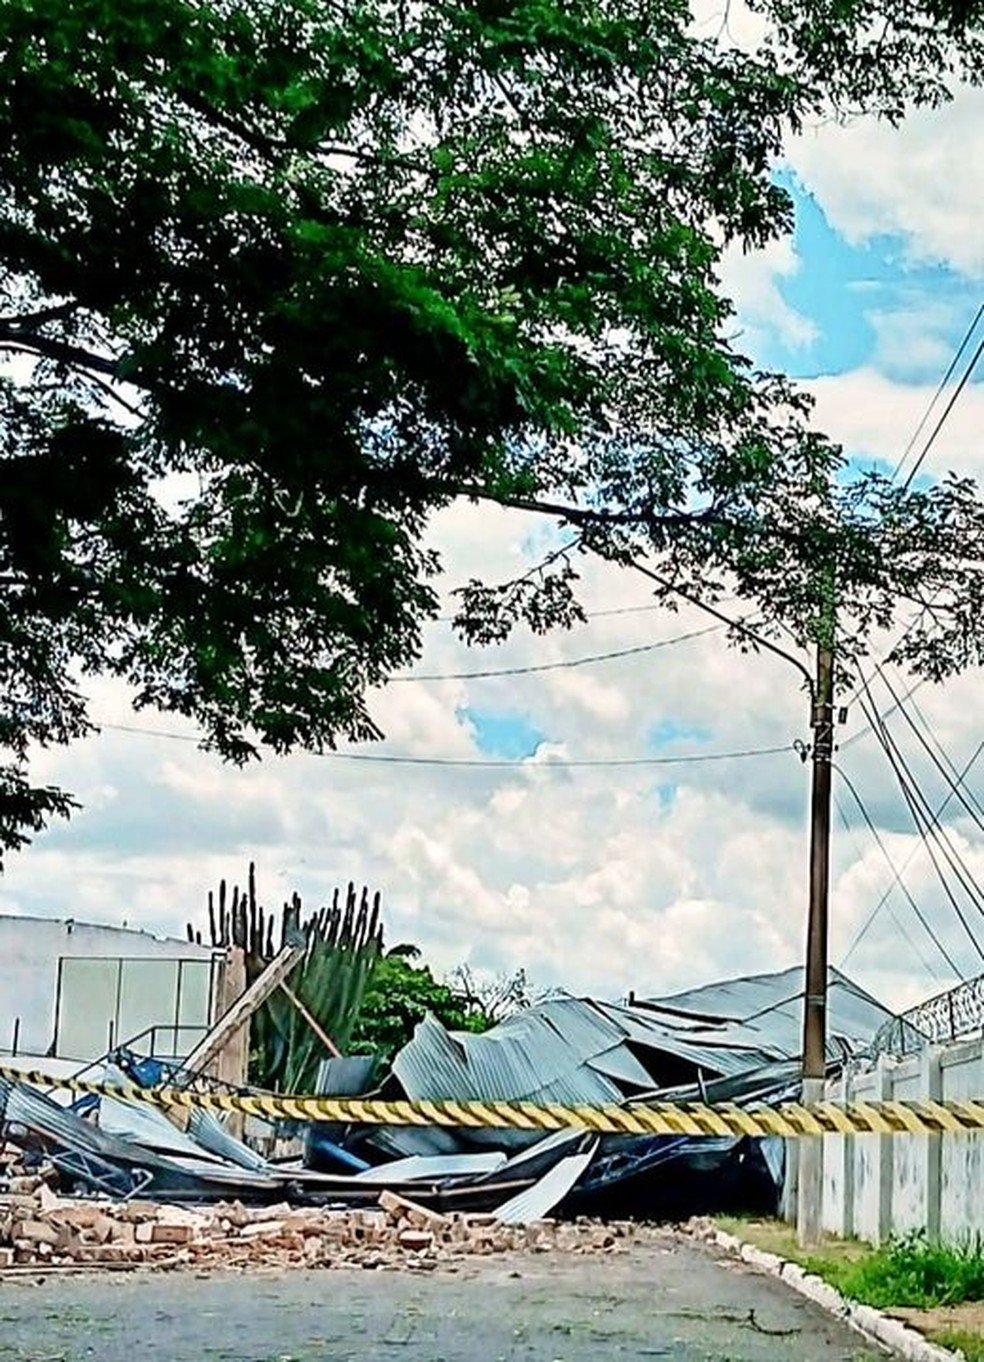 Chuva e vento forte causaram destruição em Aguaí — Foto: Redes sociais